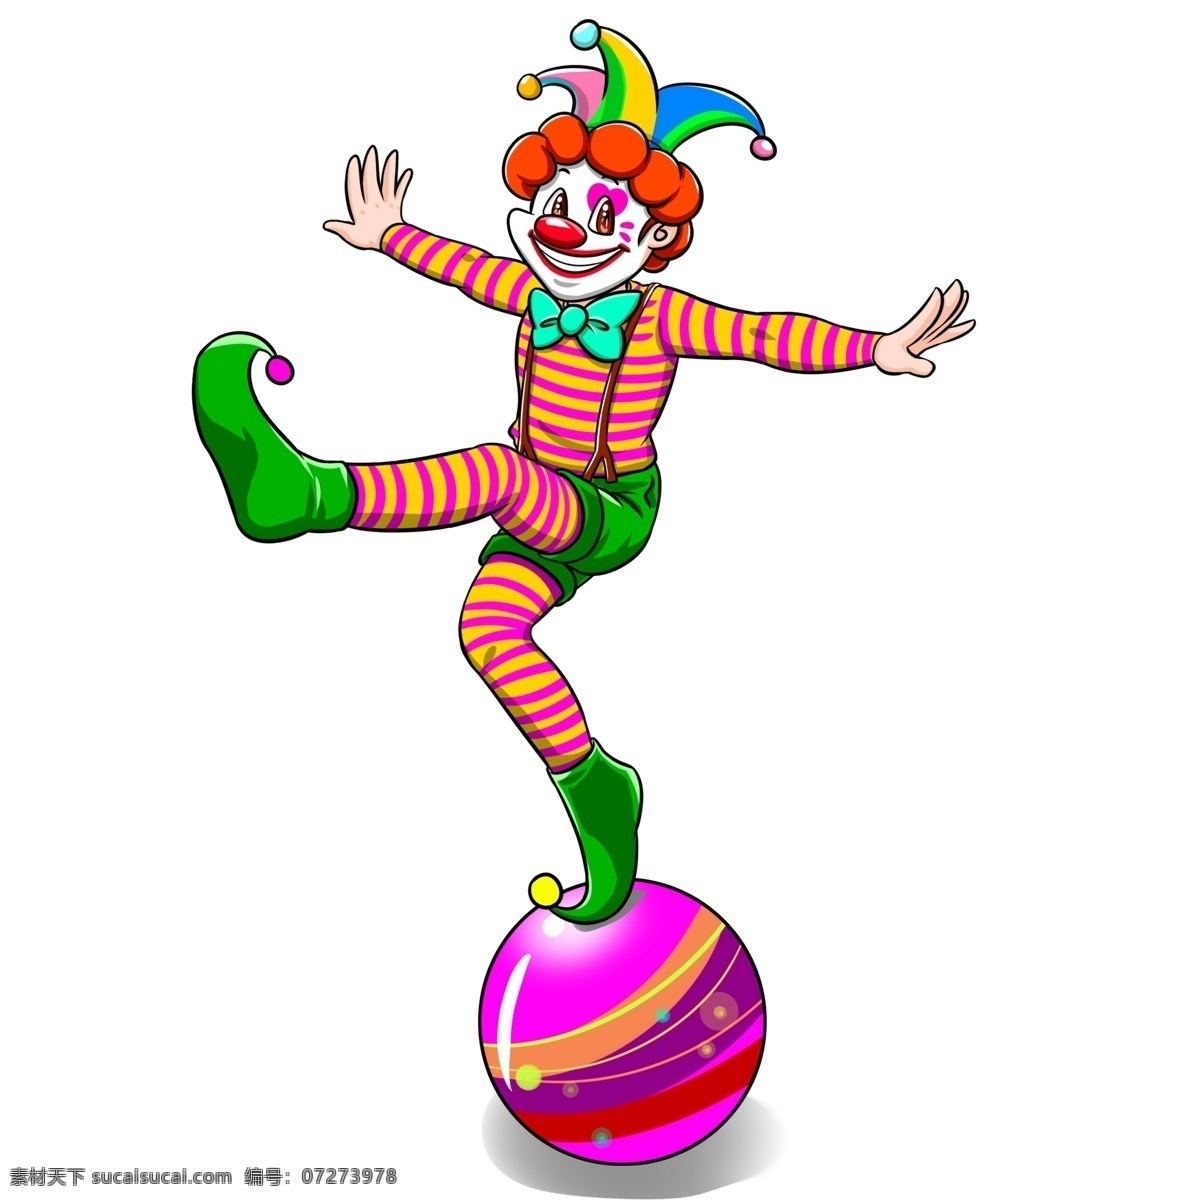 卡通 可爱 小丑 愚人节 商用 小球 杂技